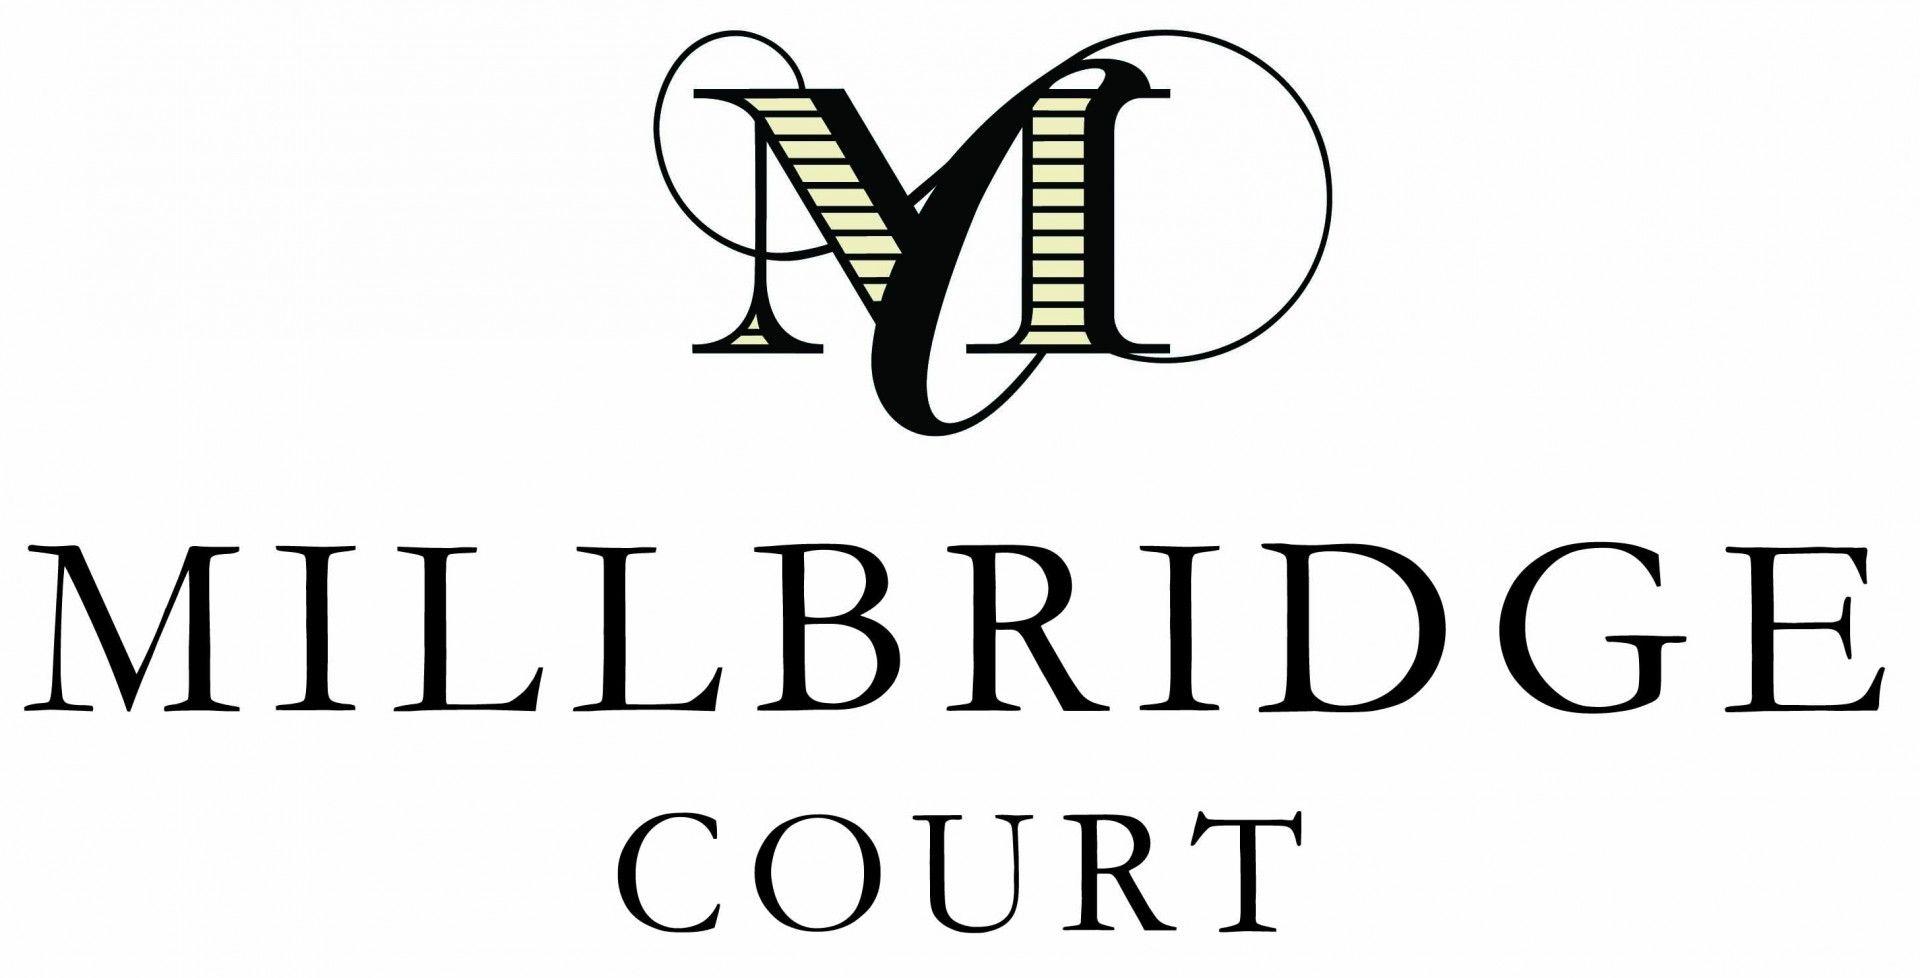 Court Logo - Millbridge Court Logo smaller |